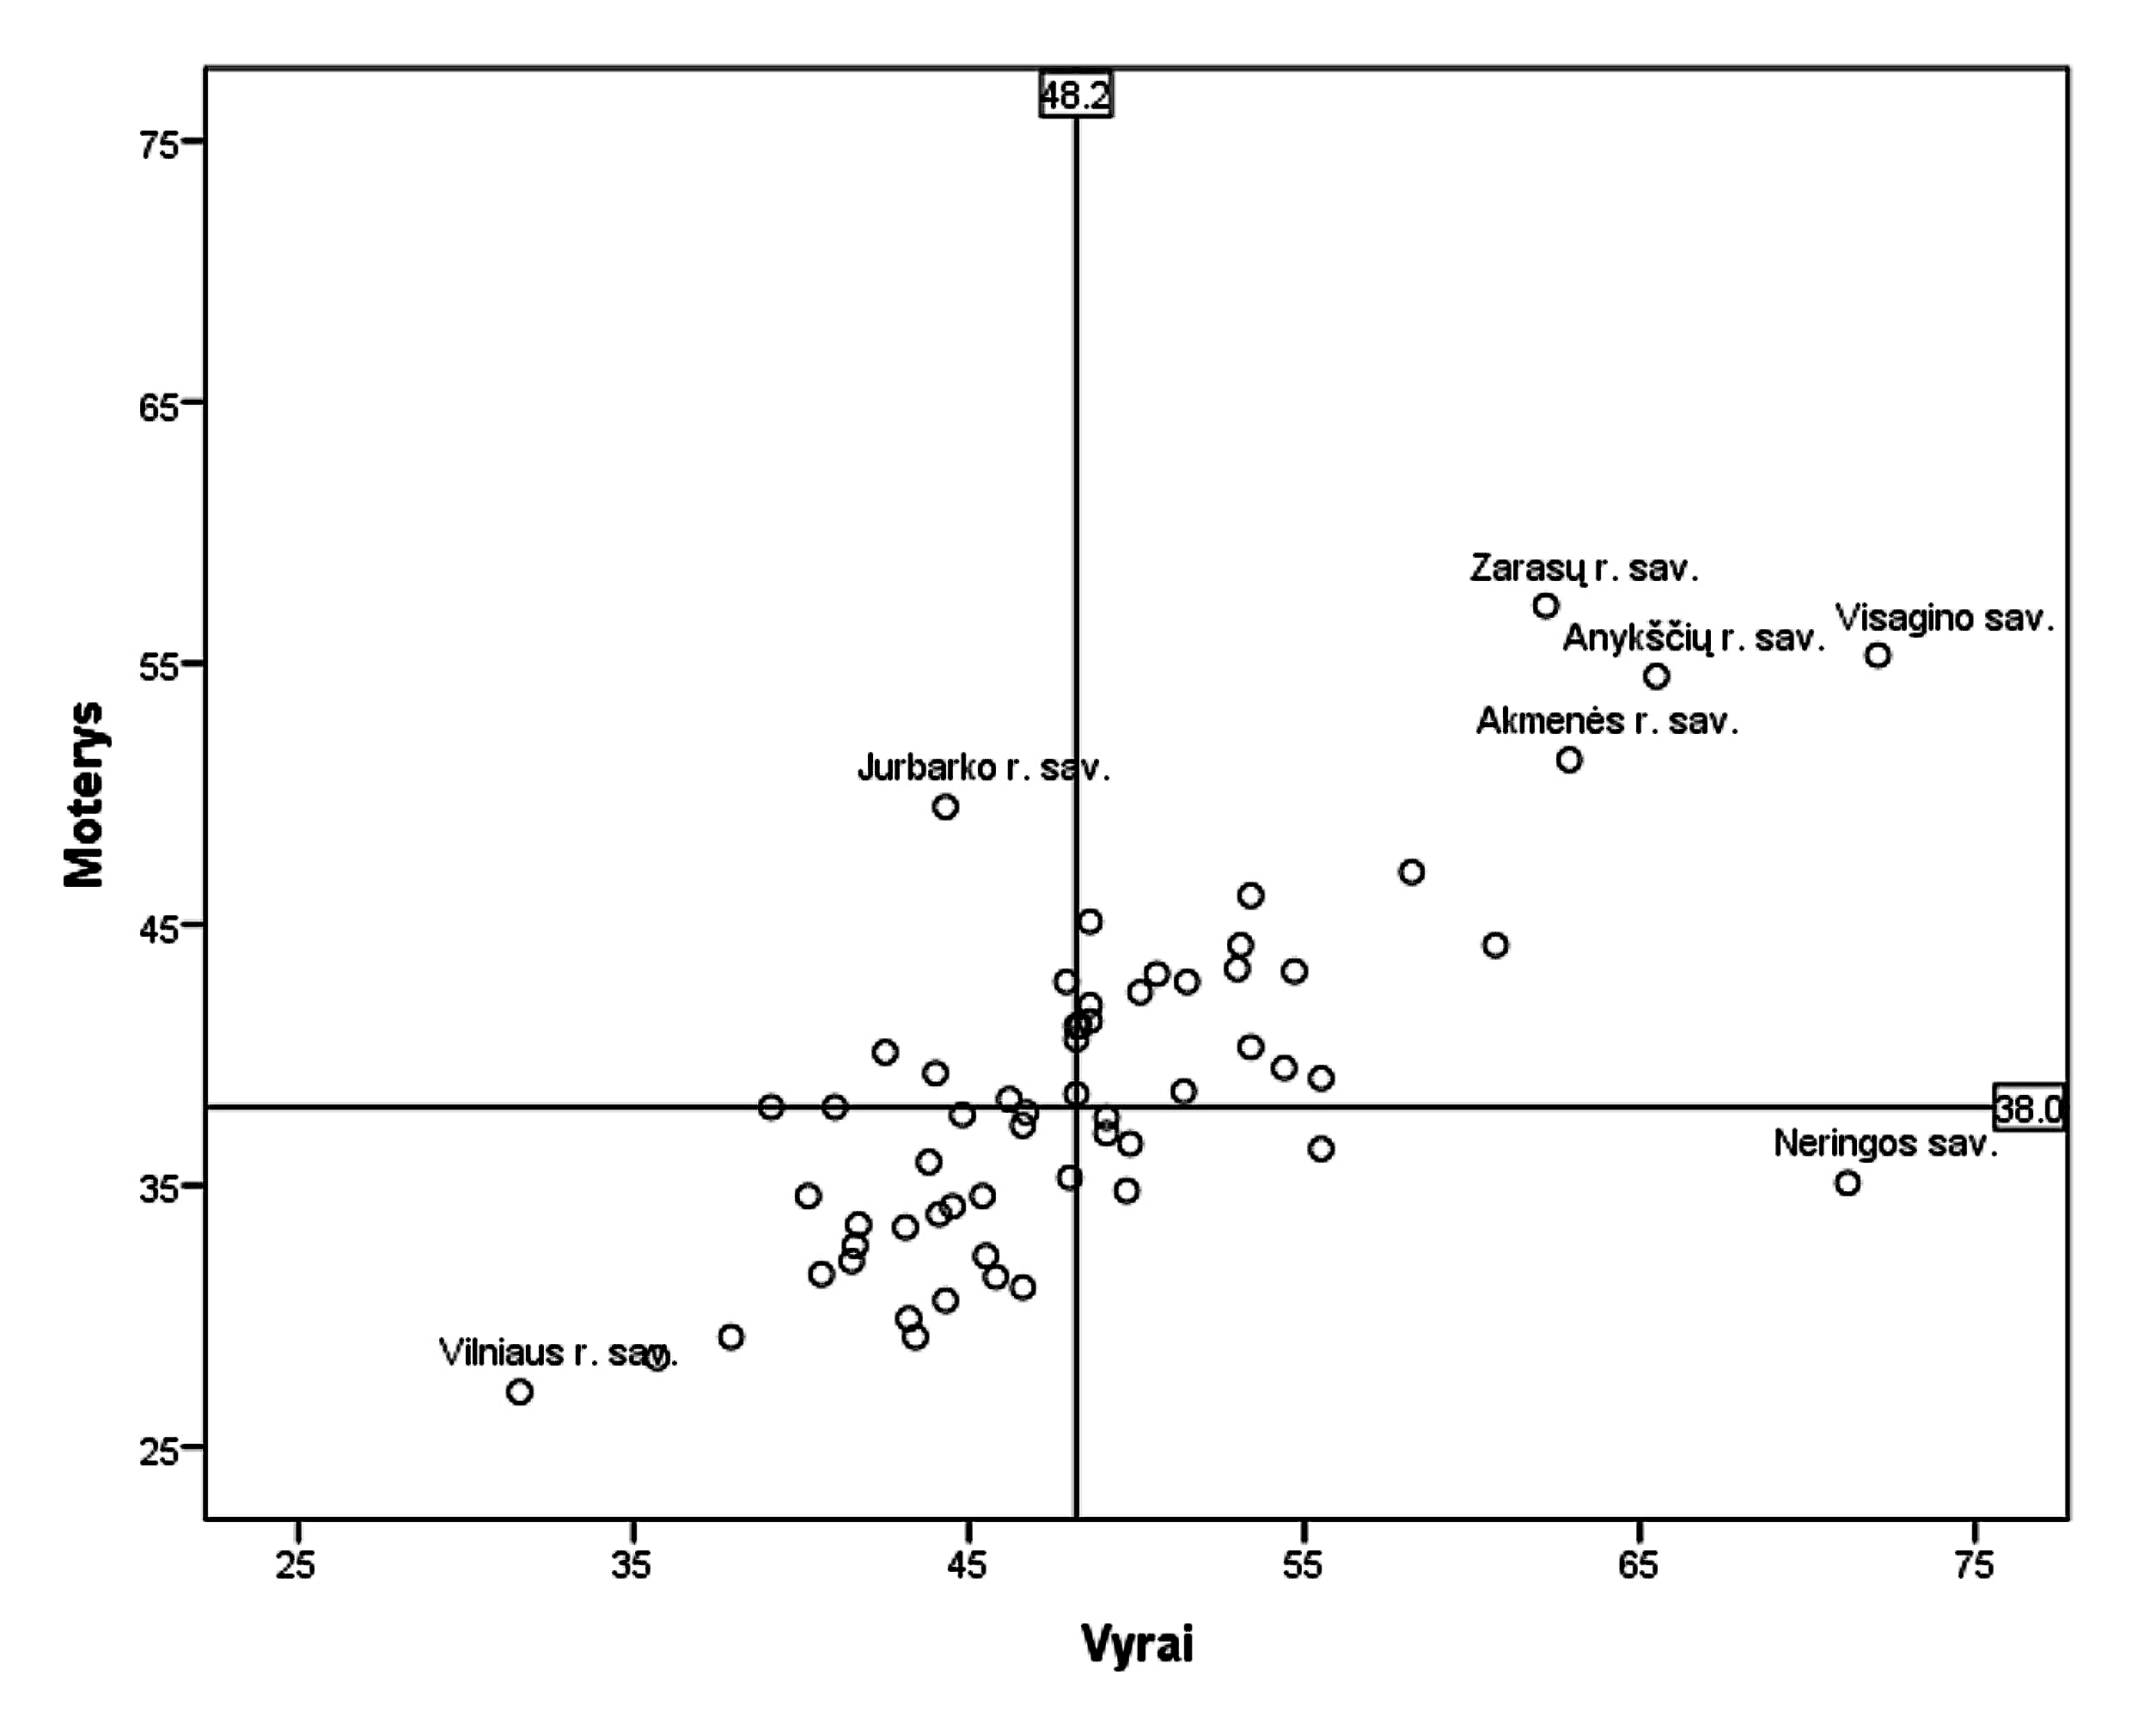 3 pav. Vyrų ir moterų IH rodiklių 1000 gyv. palyginimas savivaldybėse 2012 m. (vertikali ir horizontali linijos žymi IH rodiklių medianas)